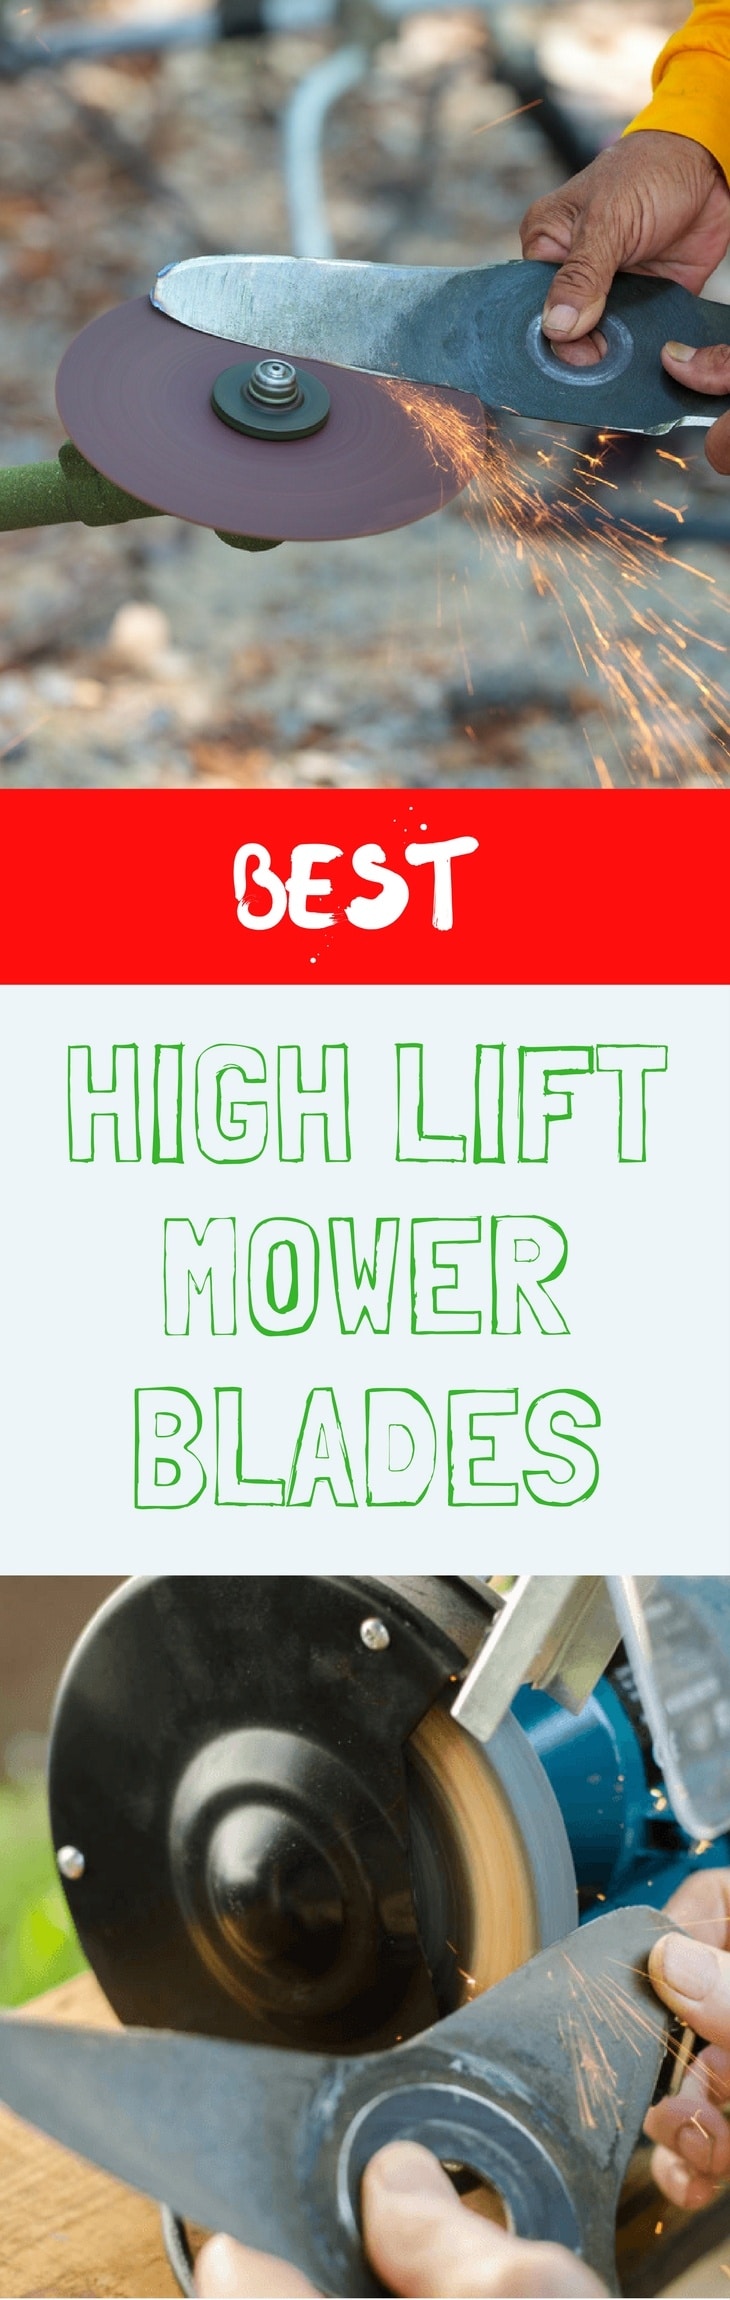 BEST HIGH LIFT MOWER BLADES pin it